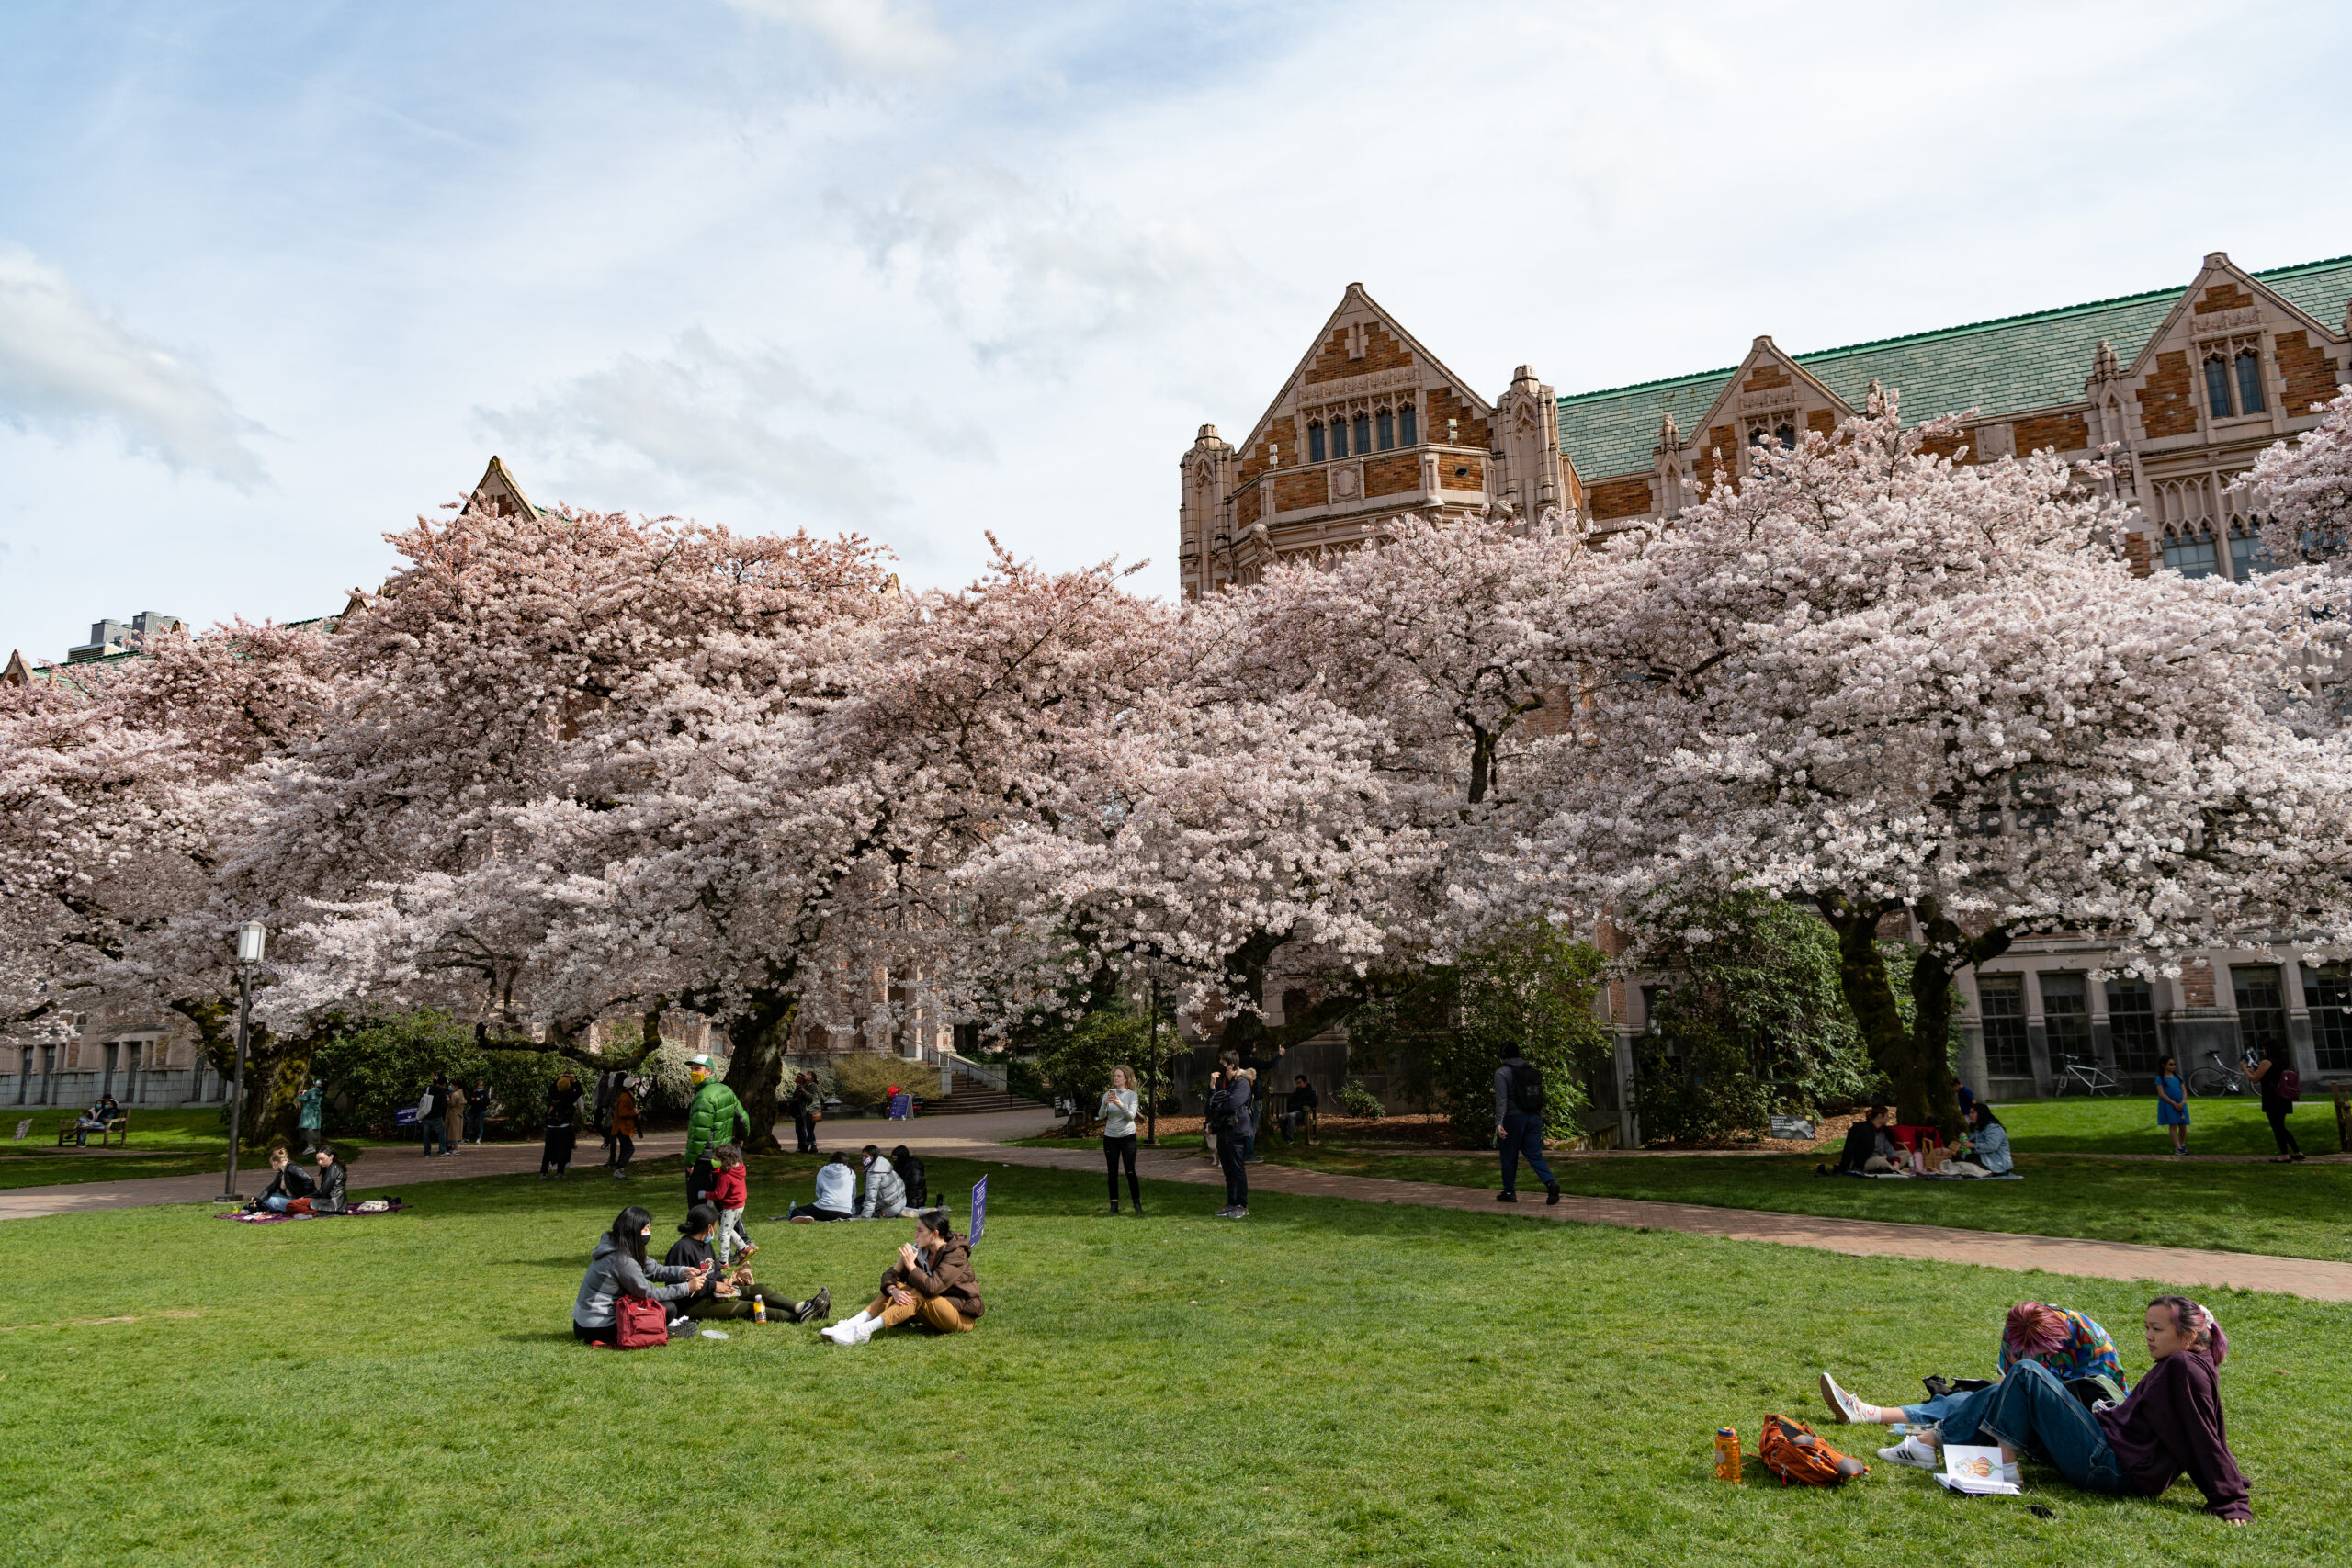 Sakura blooming in University of Washington campus